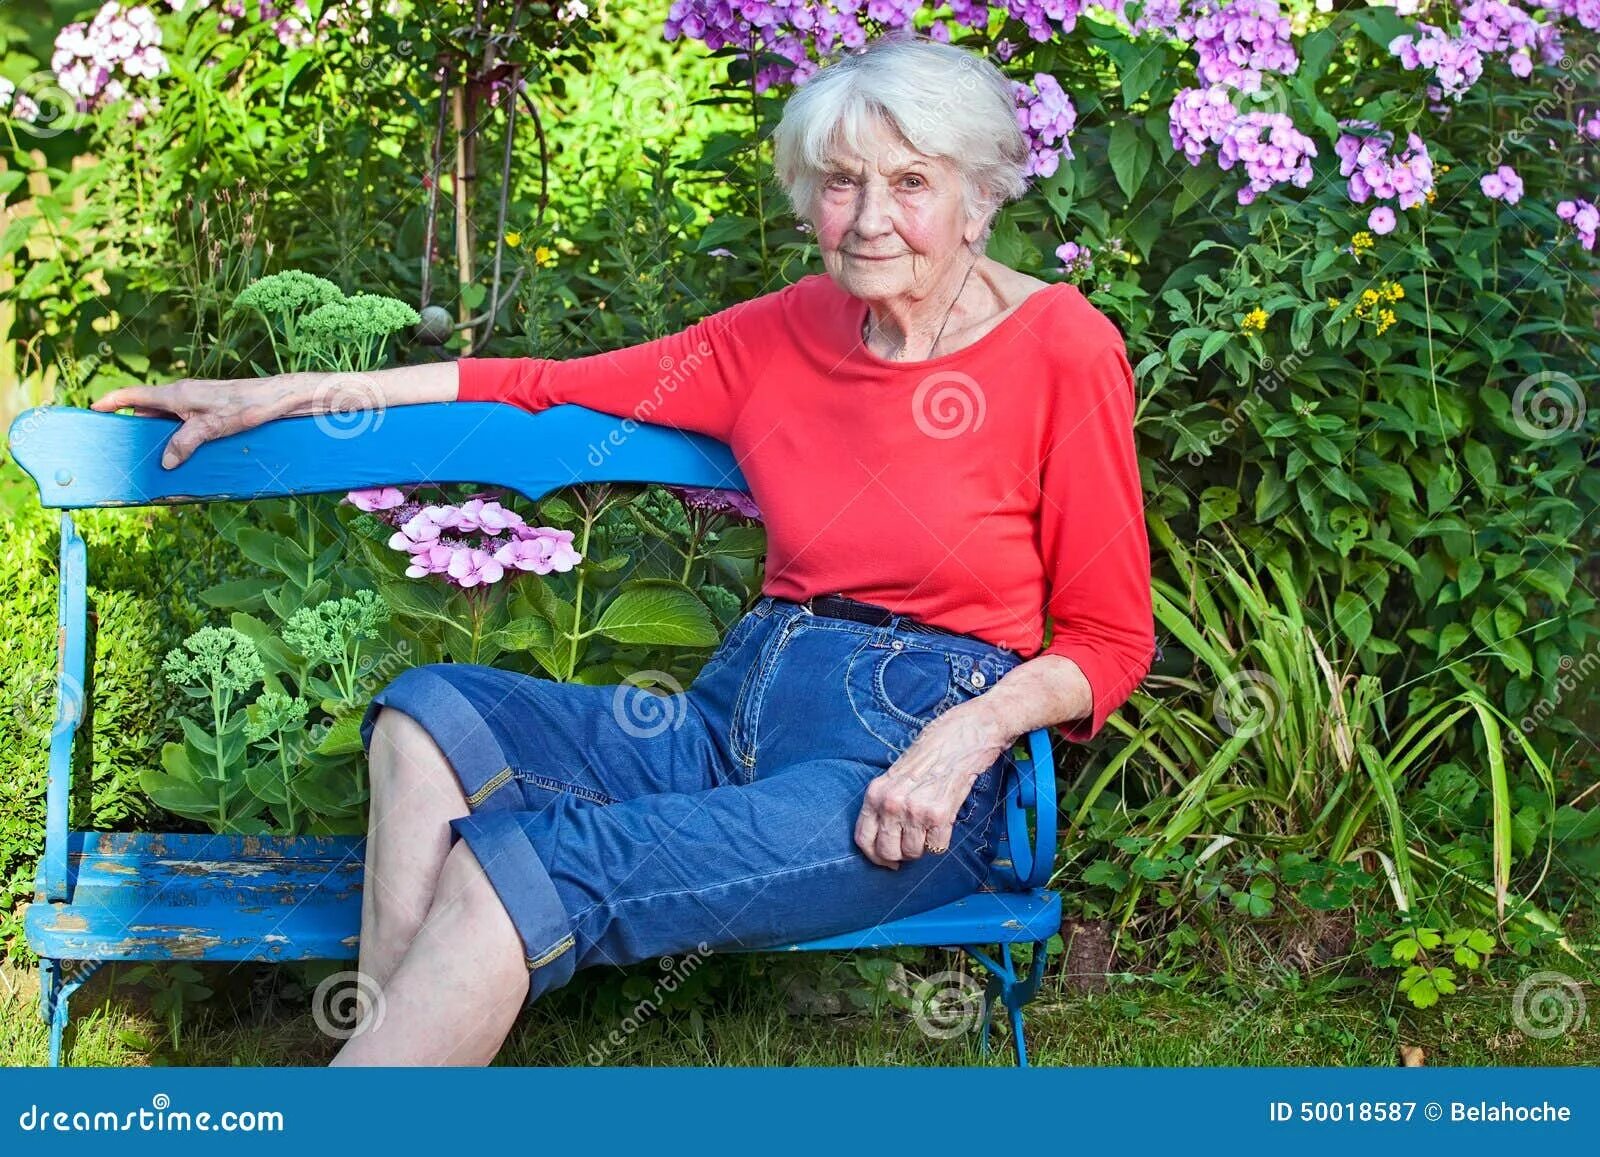 Бабушки худые маленькие. Пожилые в саду. Пожилая женщина на лавочке. Пожилая женщина на скамейке. Старая женщина на скамейке в саду.